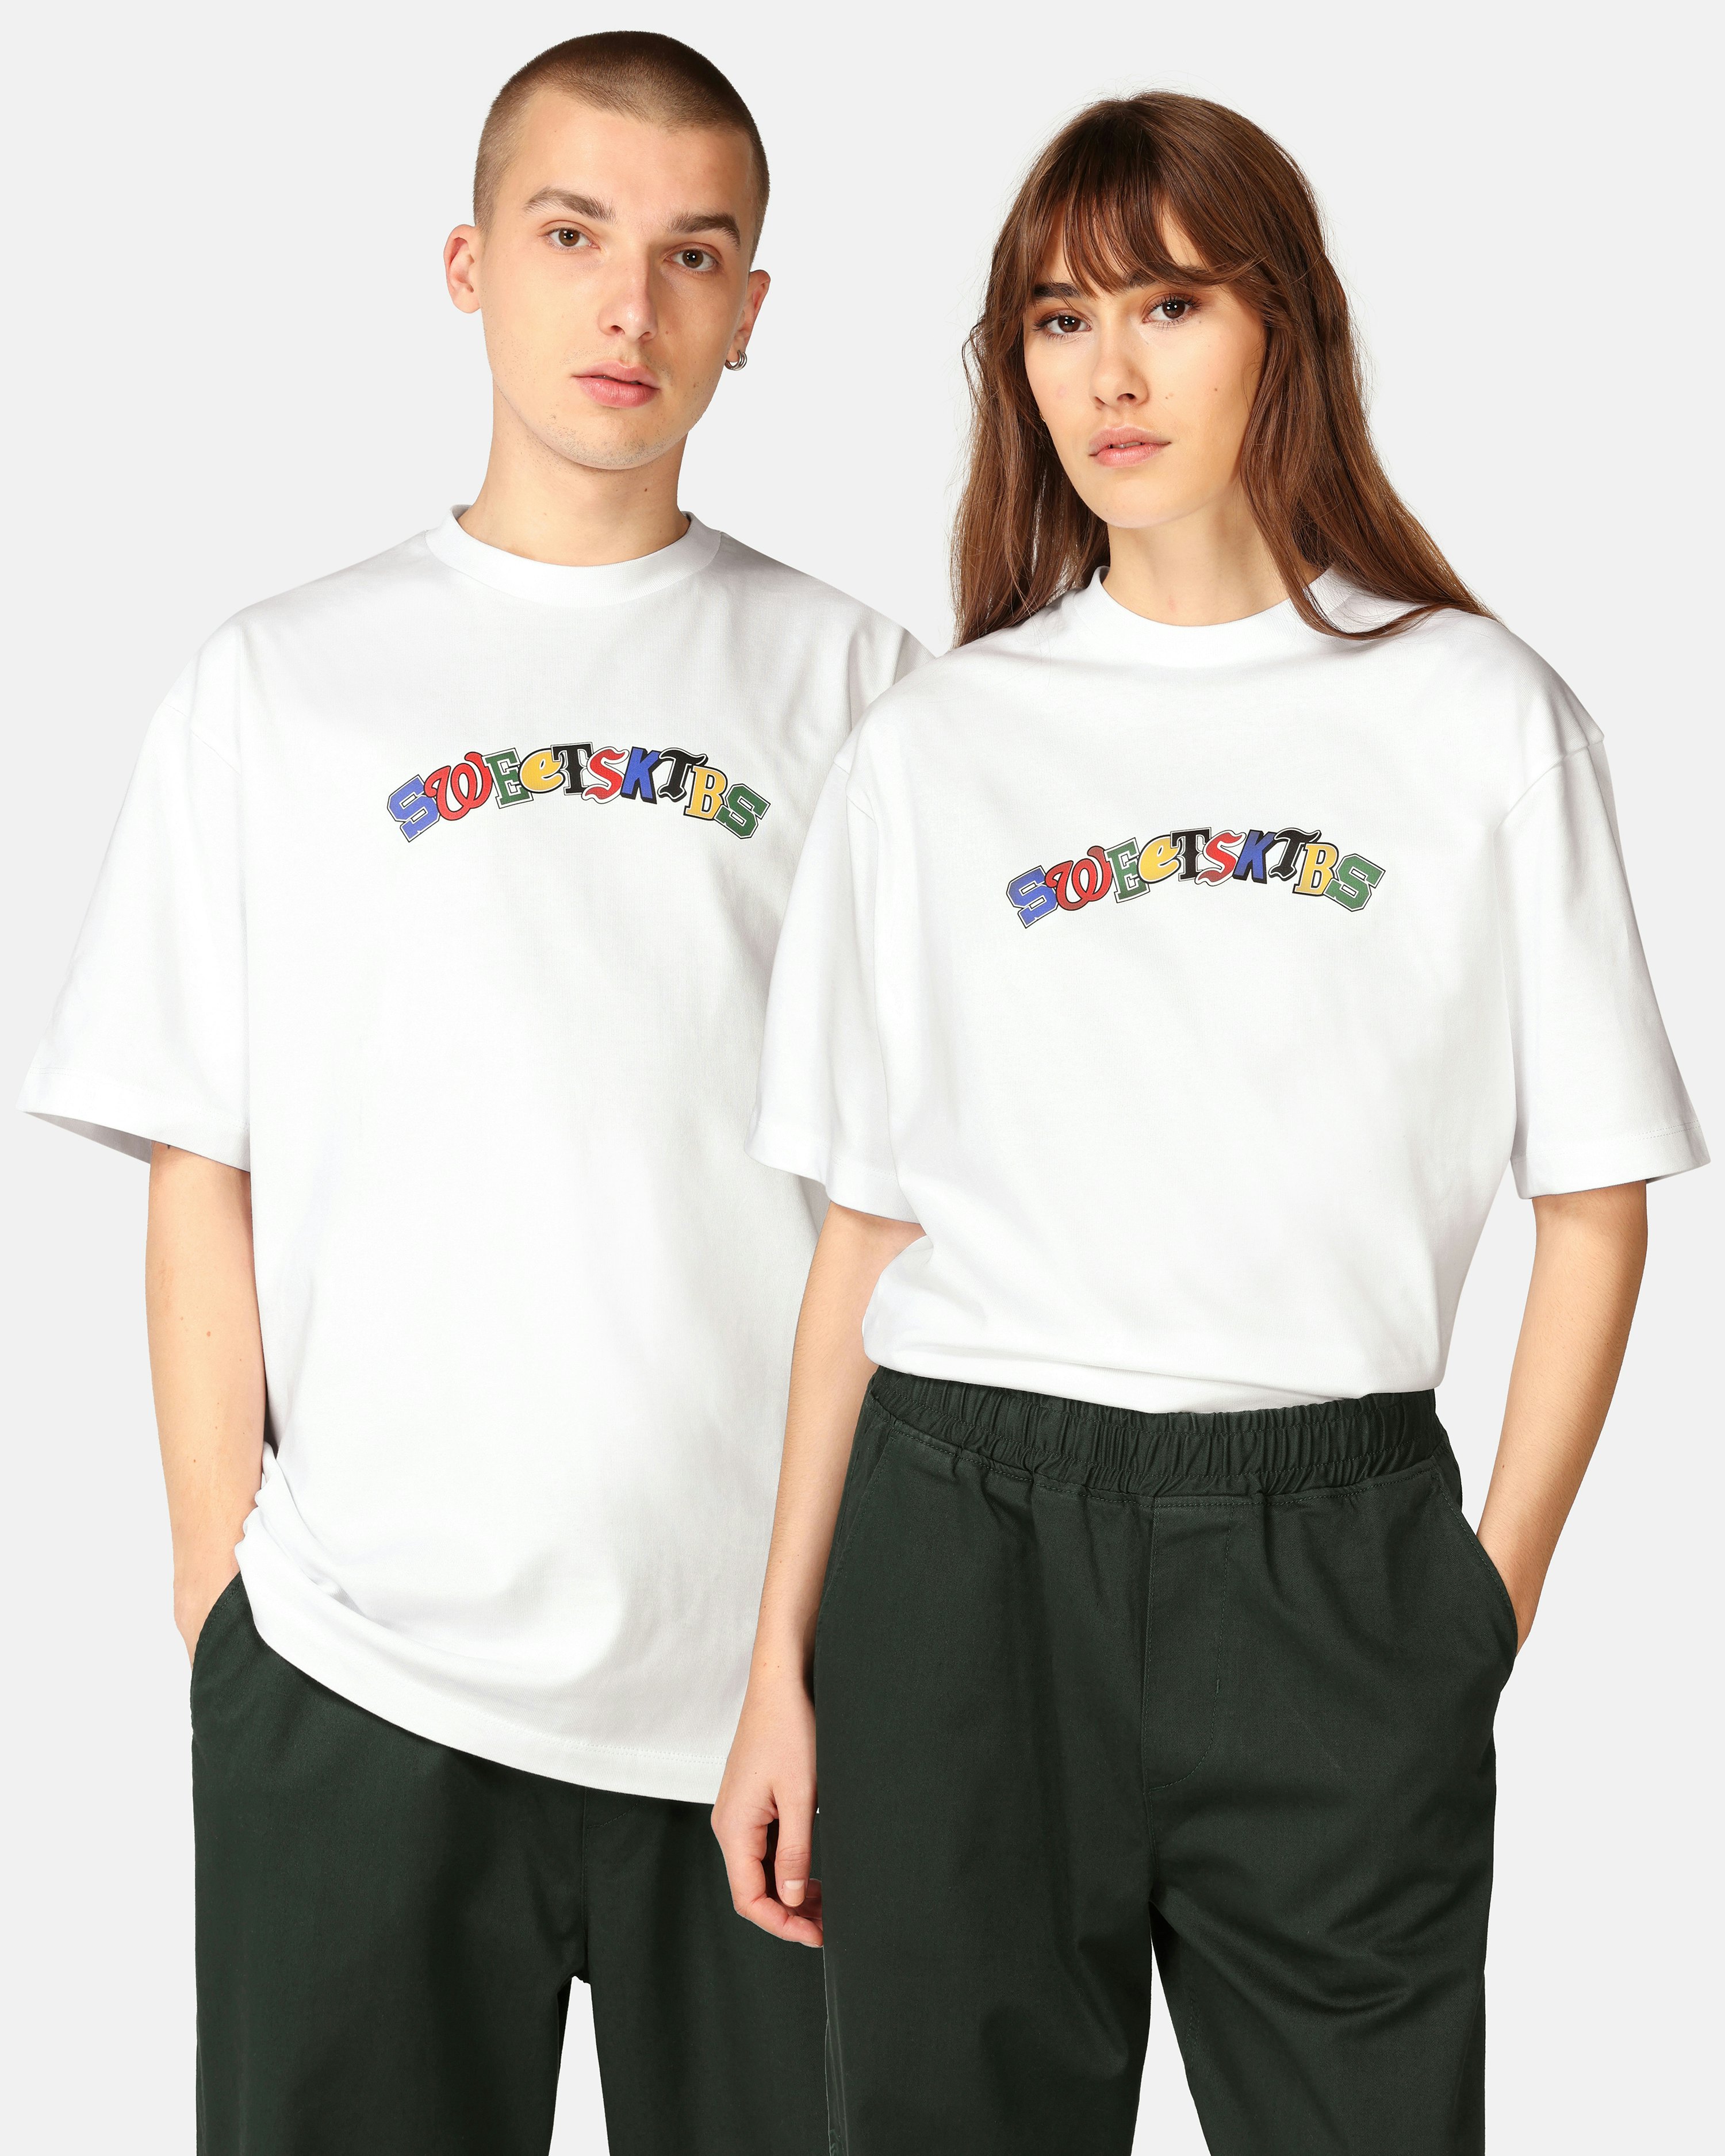 SWEET SKTBS Multi T-Shirt White | Unisex | Junkyard